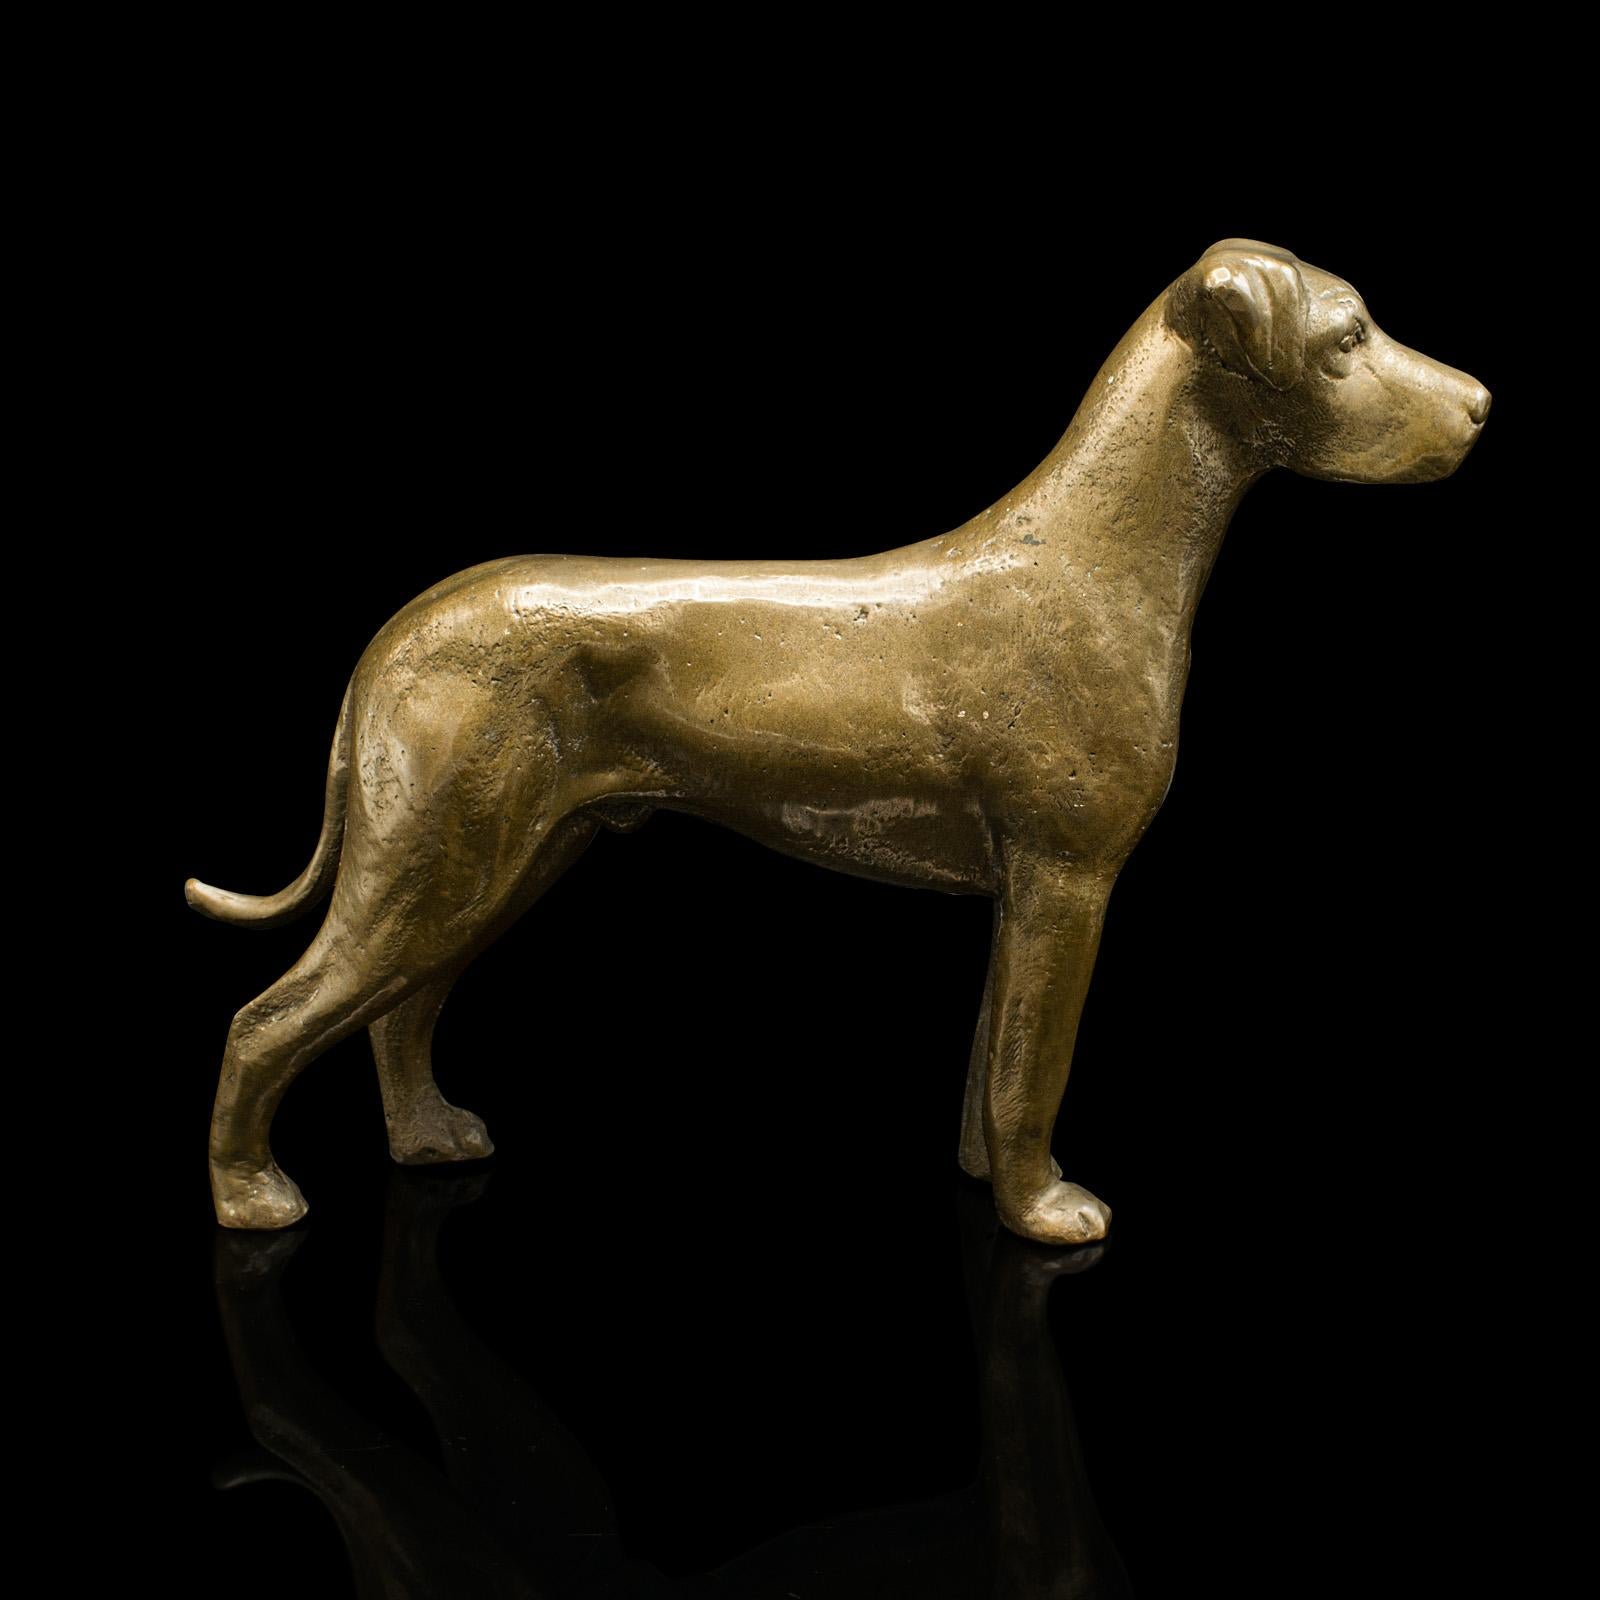 Dies ist eine antike Doggenfigur. Eine englische, dekorative Hundestatue aus Bronze, aus der späten viktorianischen Zeit, um 1900.

Attraktives Gewicht für diesen besten Freund des Desktops
Zeigt eine wünschenswerte gealterte Patina und in gutem